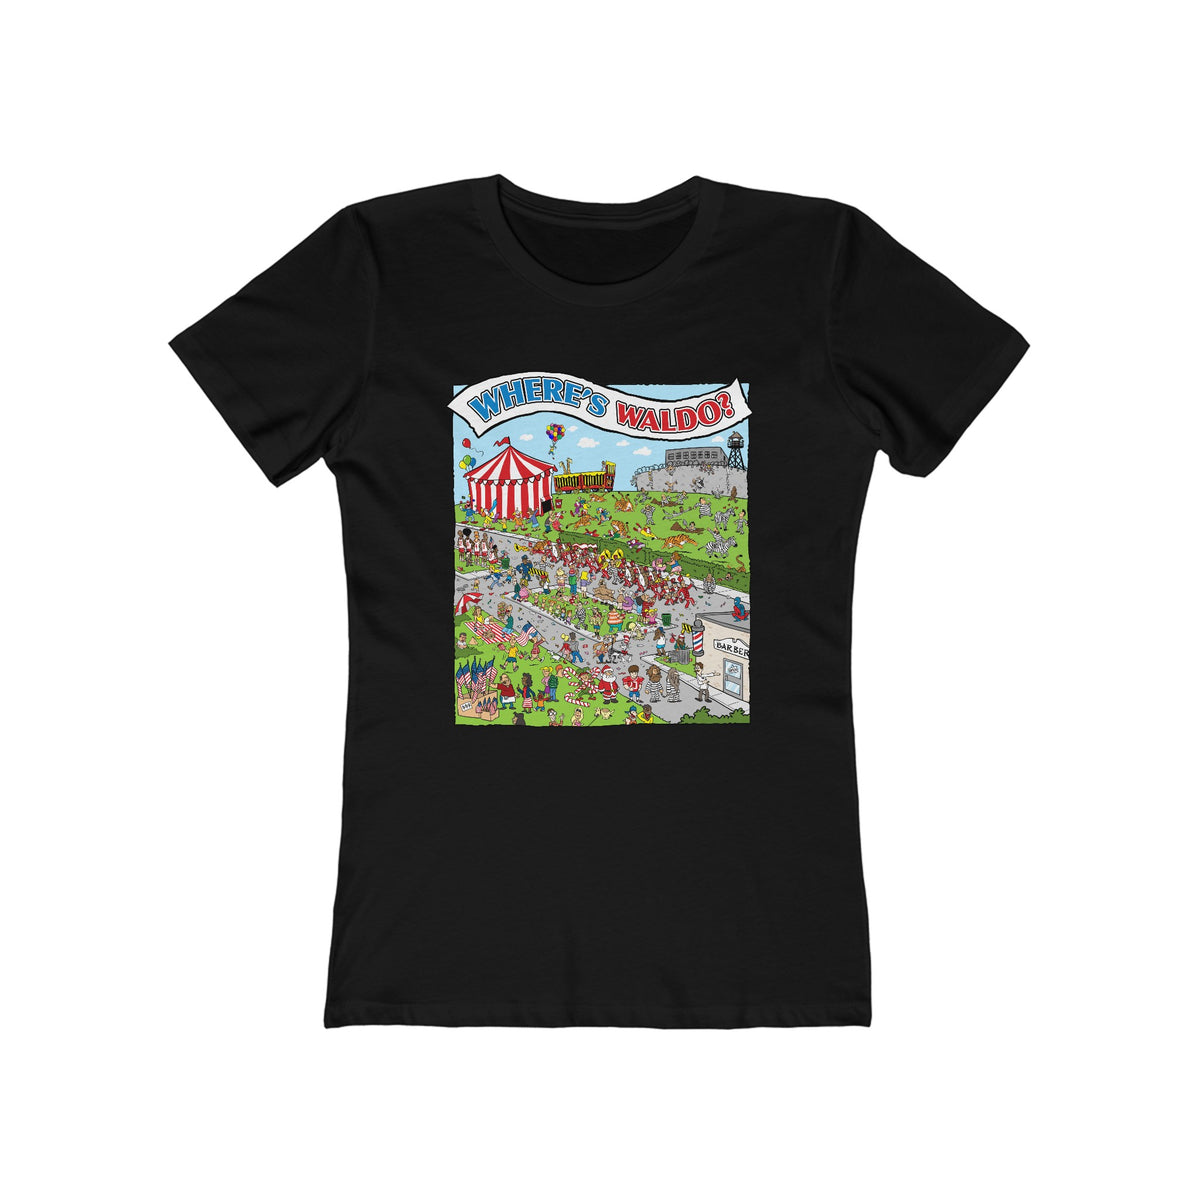 Where's Waldo? - Women’s T-Shirt